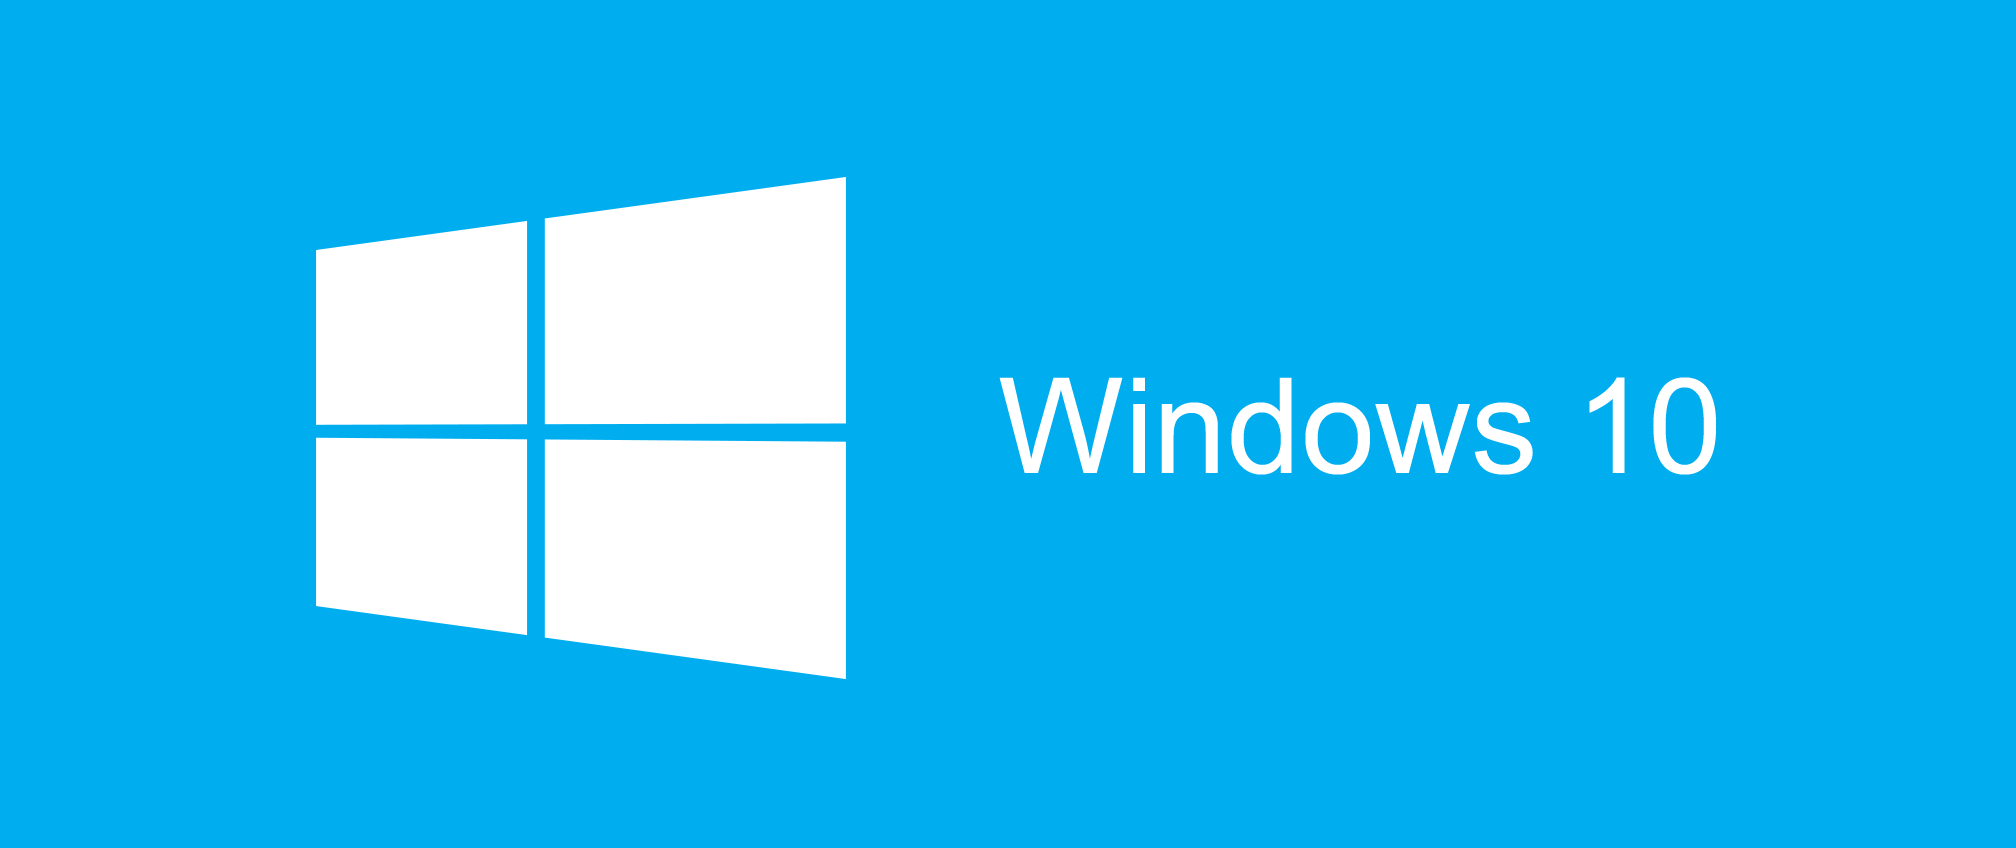 Windows 10 a neustálá jízda marketingových výkřiků